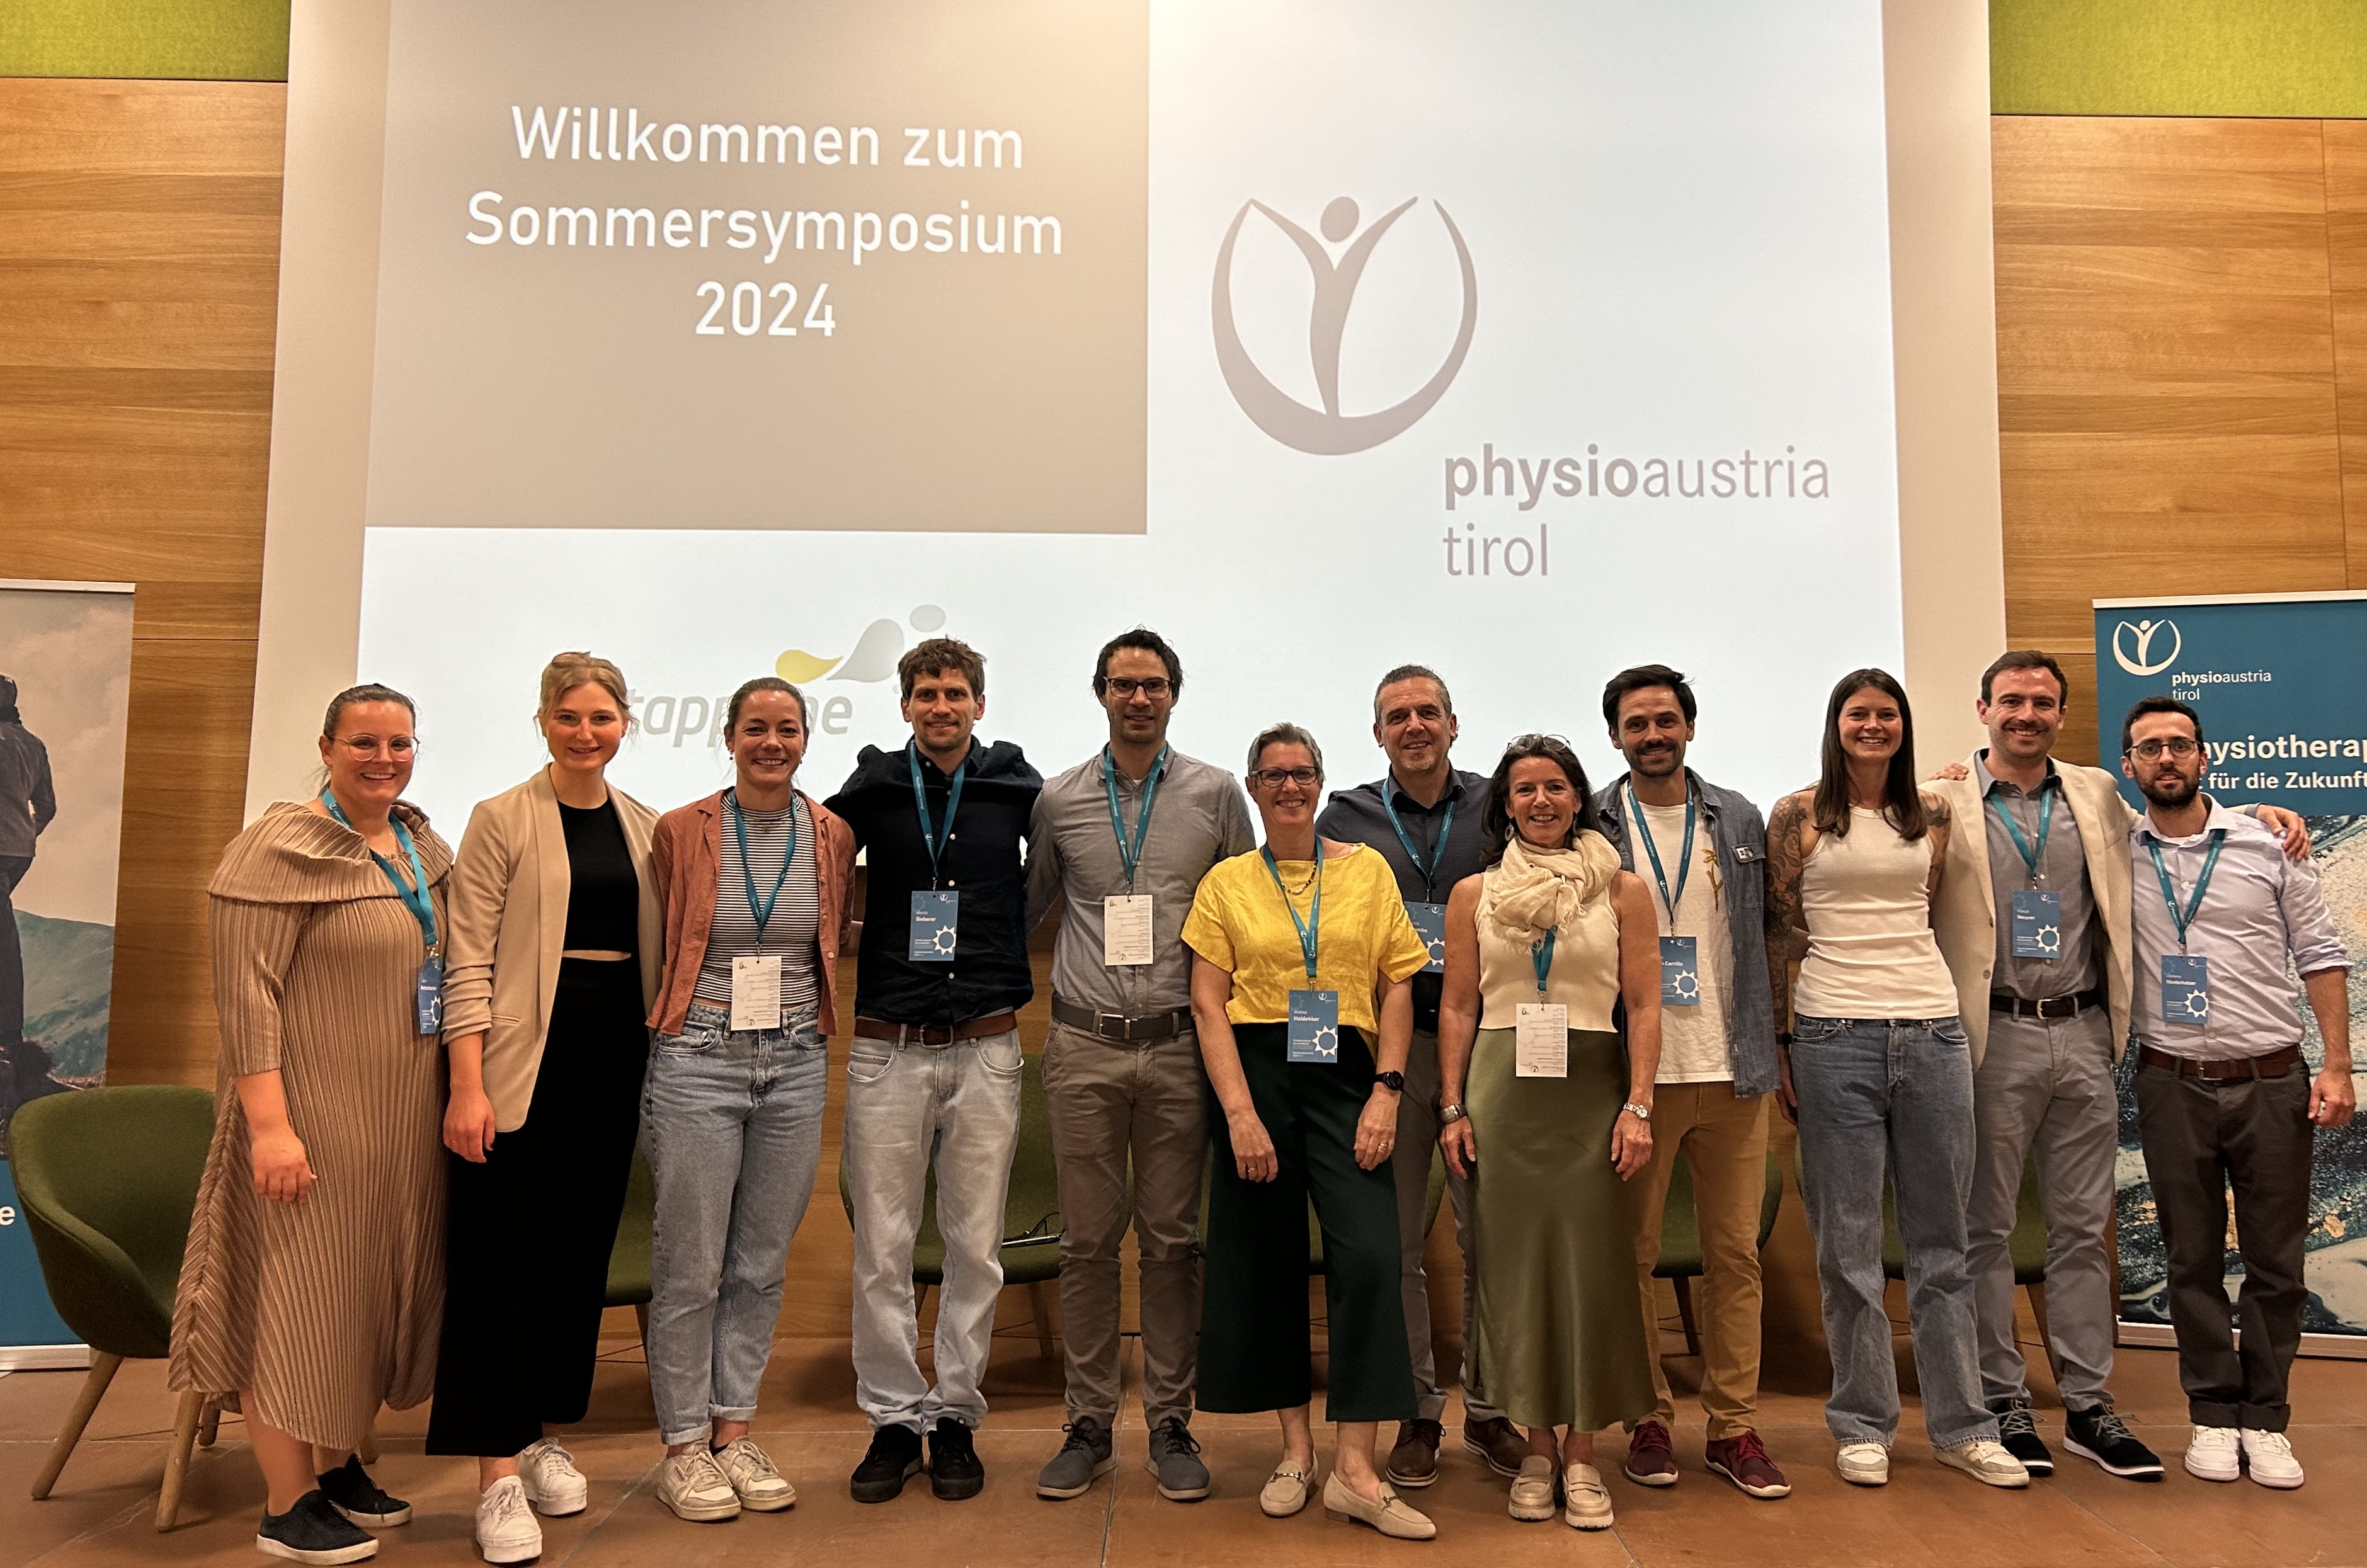 Team Physio Austria Tirol und Referent*innen beim Sommersymposium